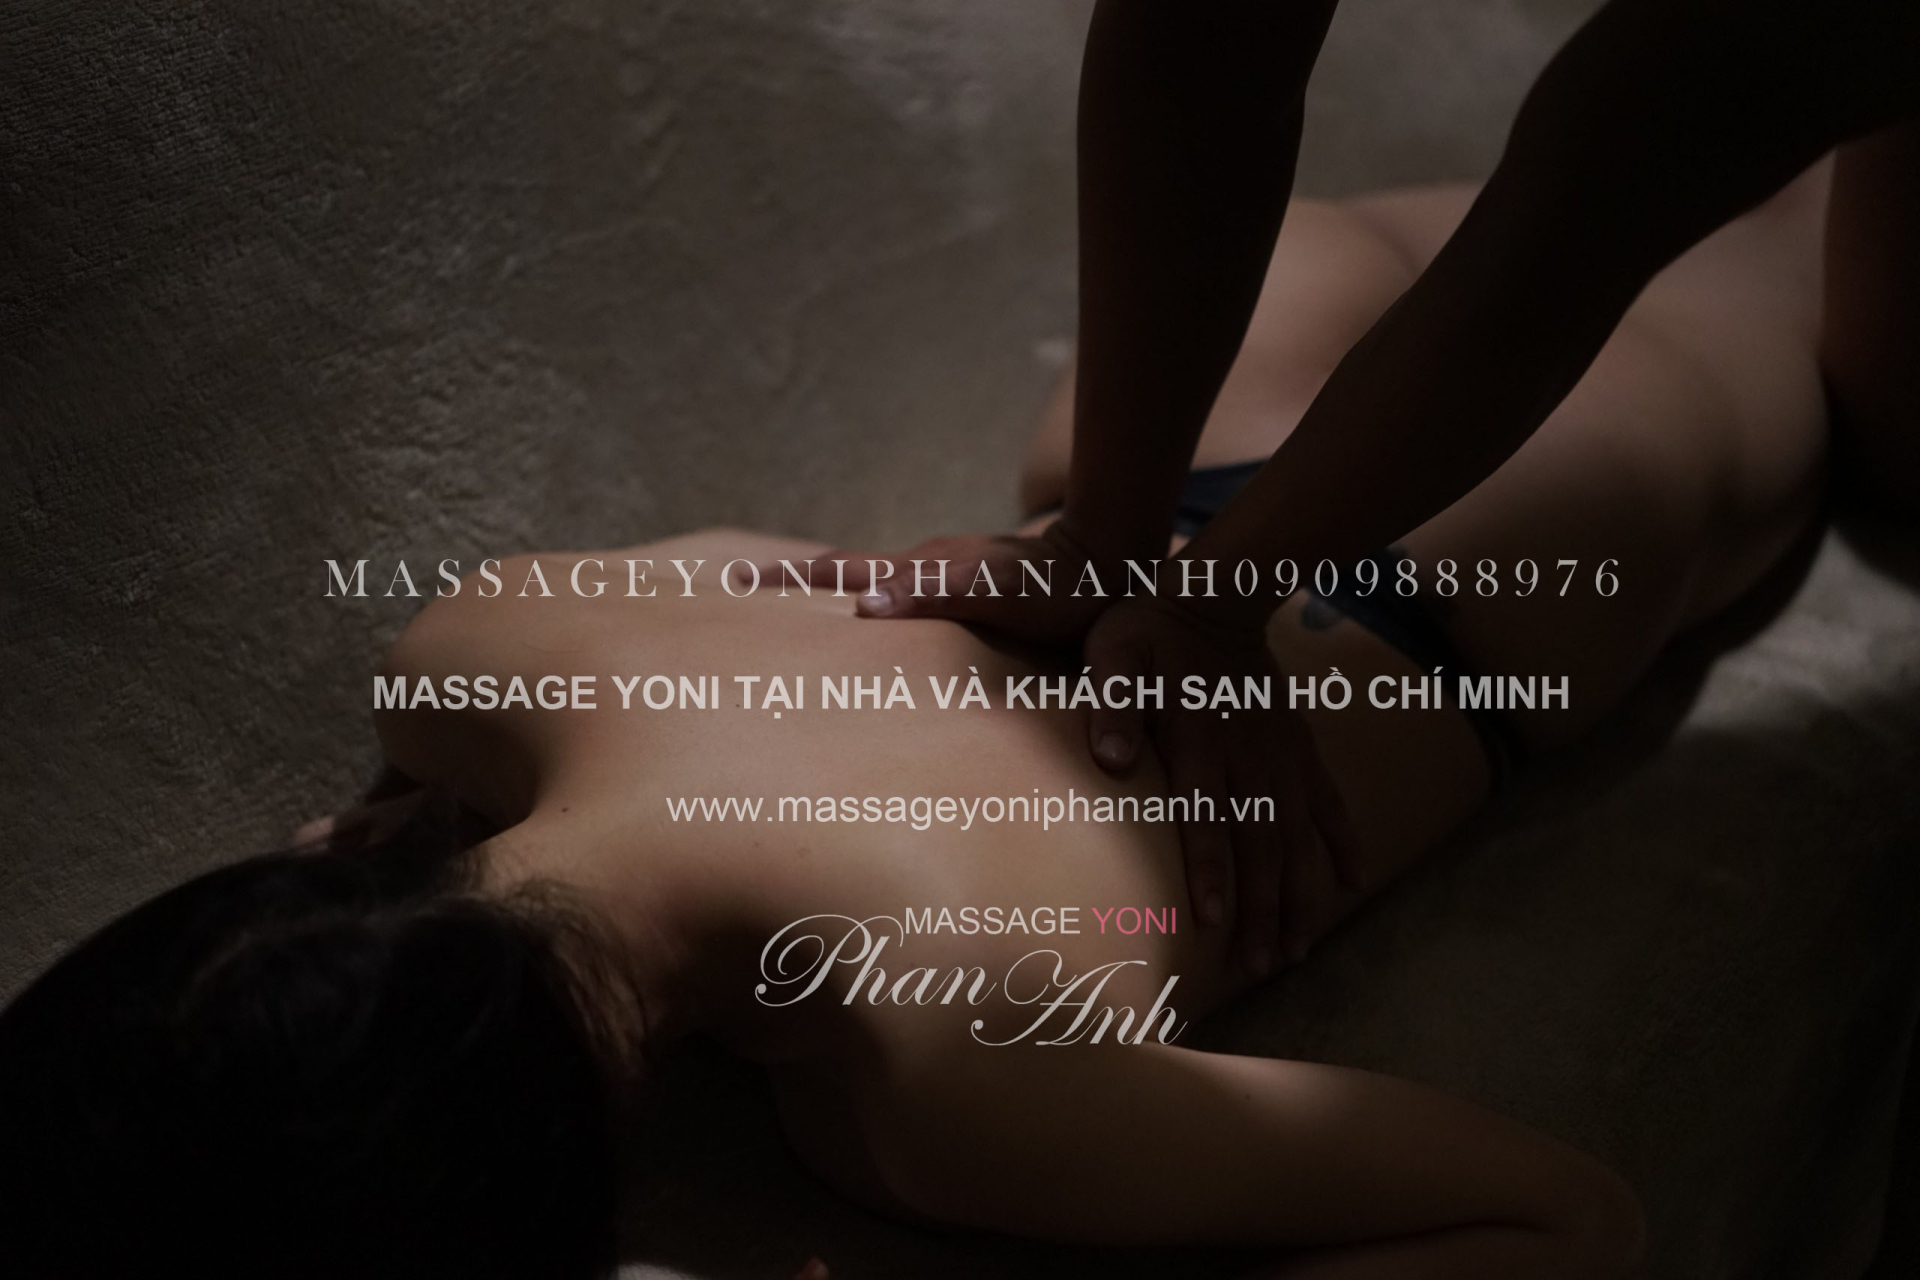 massage yoni tại nhà và khách sạn Hồ Chí Minh